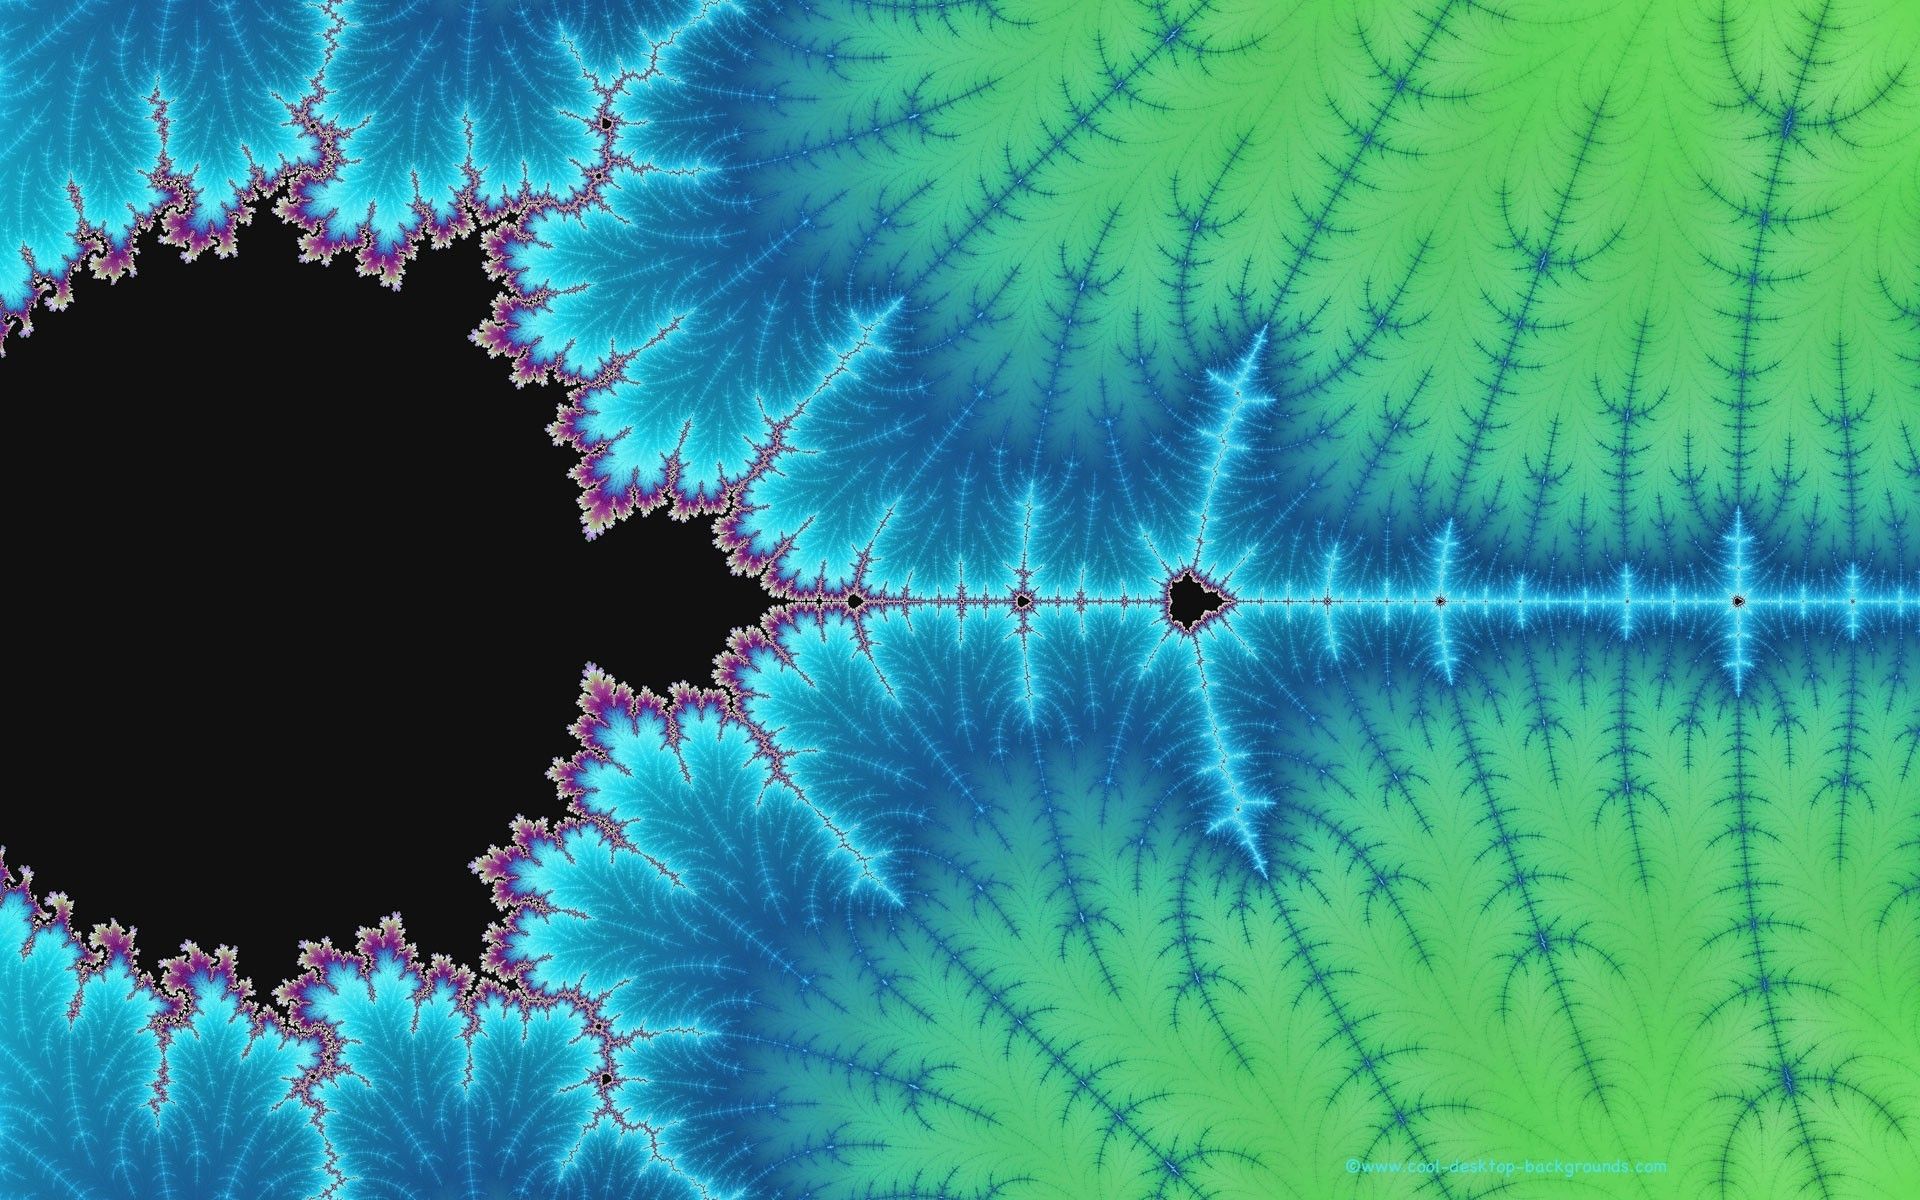 Mandelbrot fractal wallpaper fractals mandelbrot fractal nature design